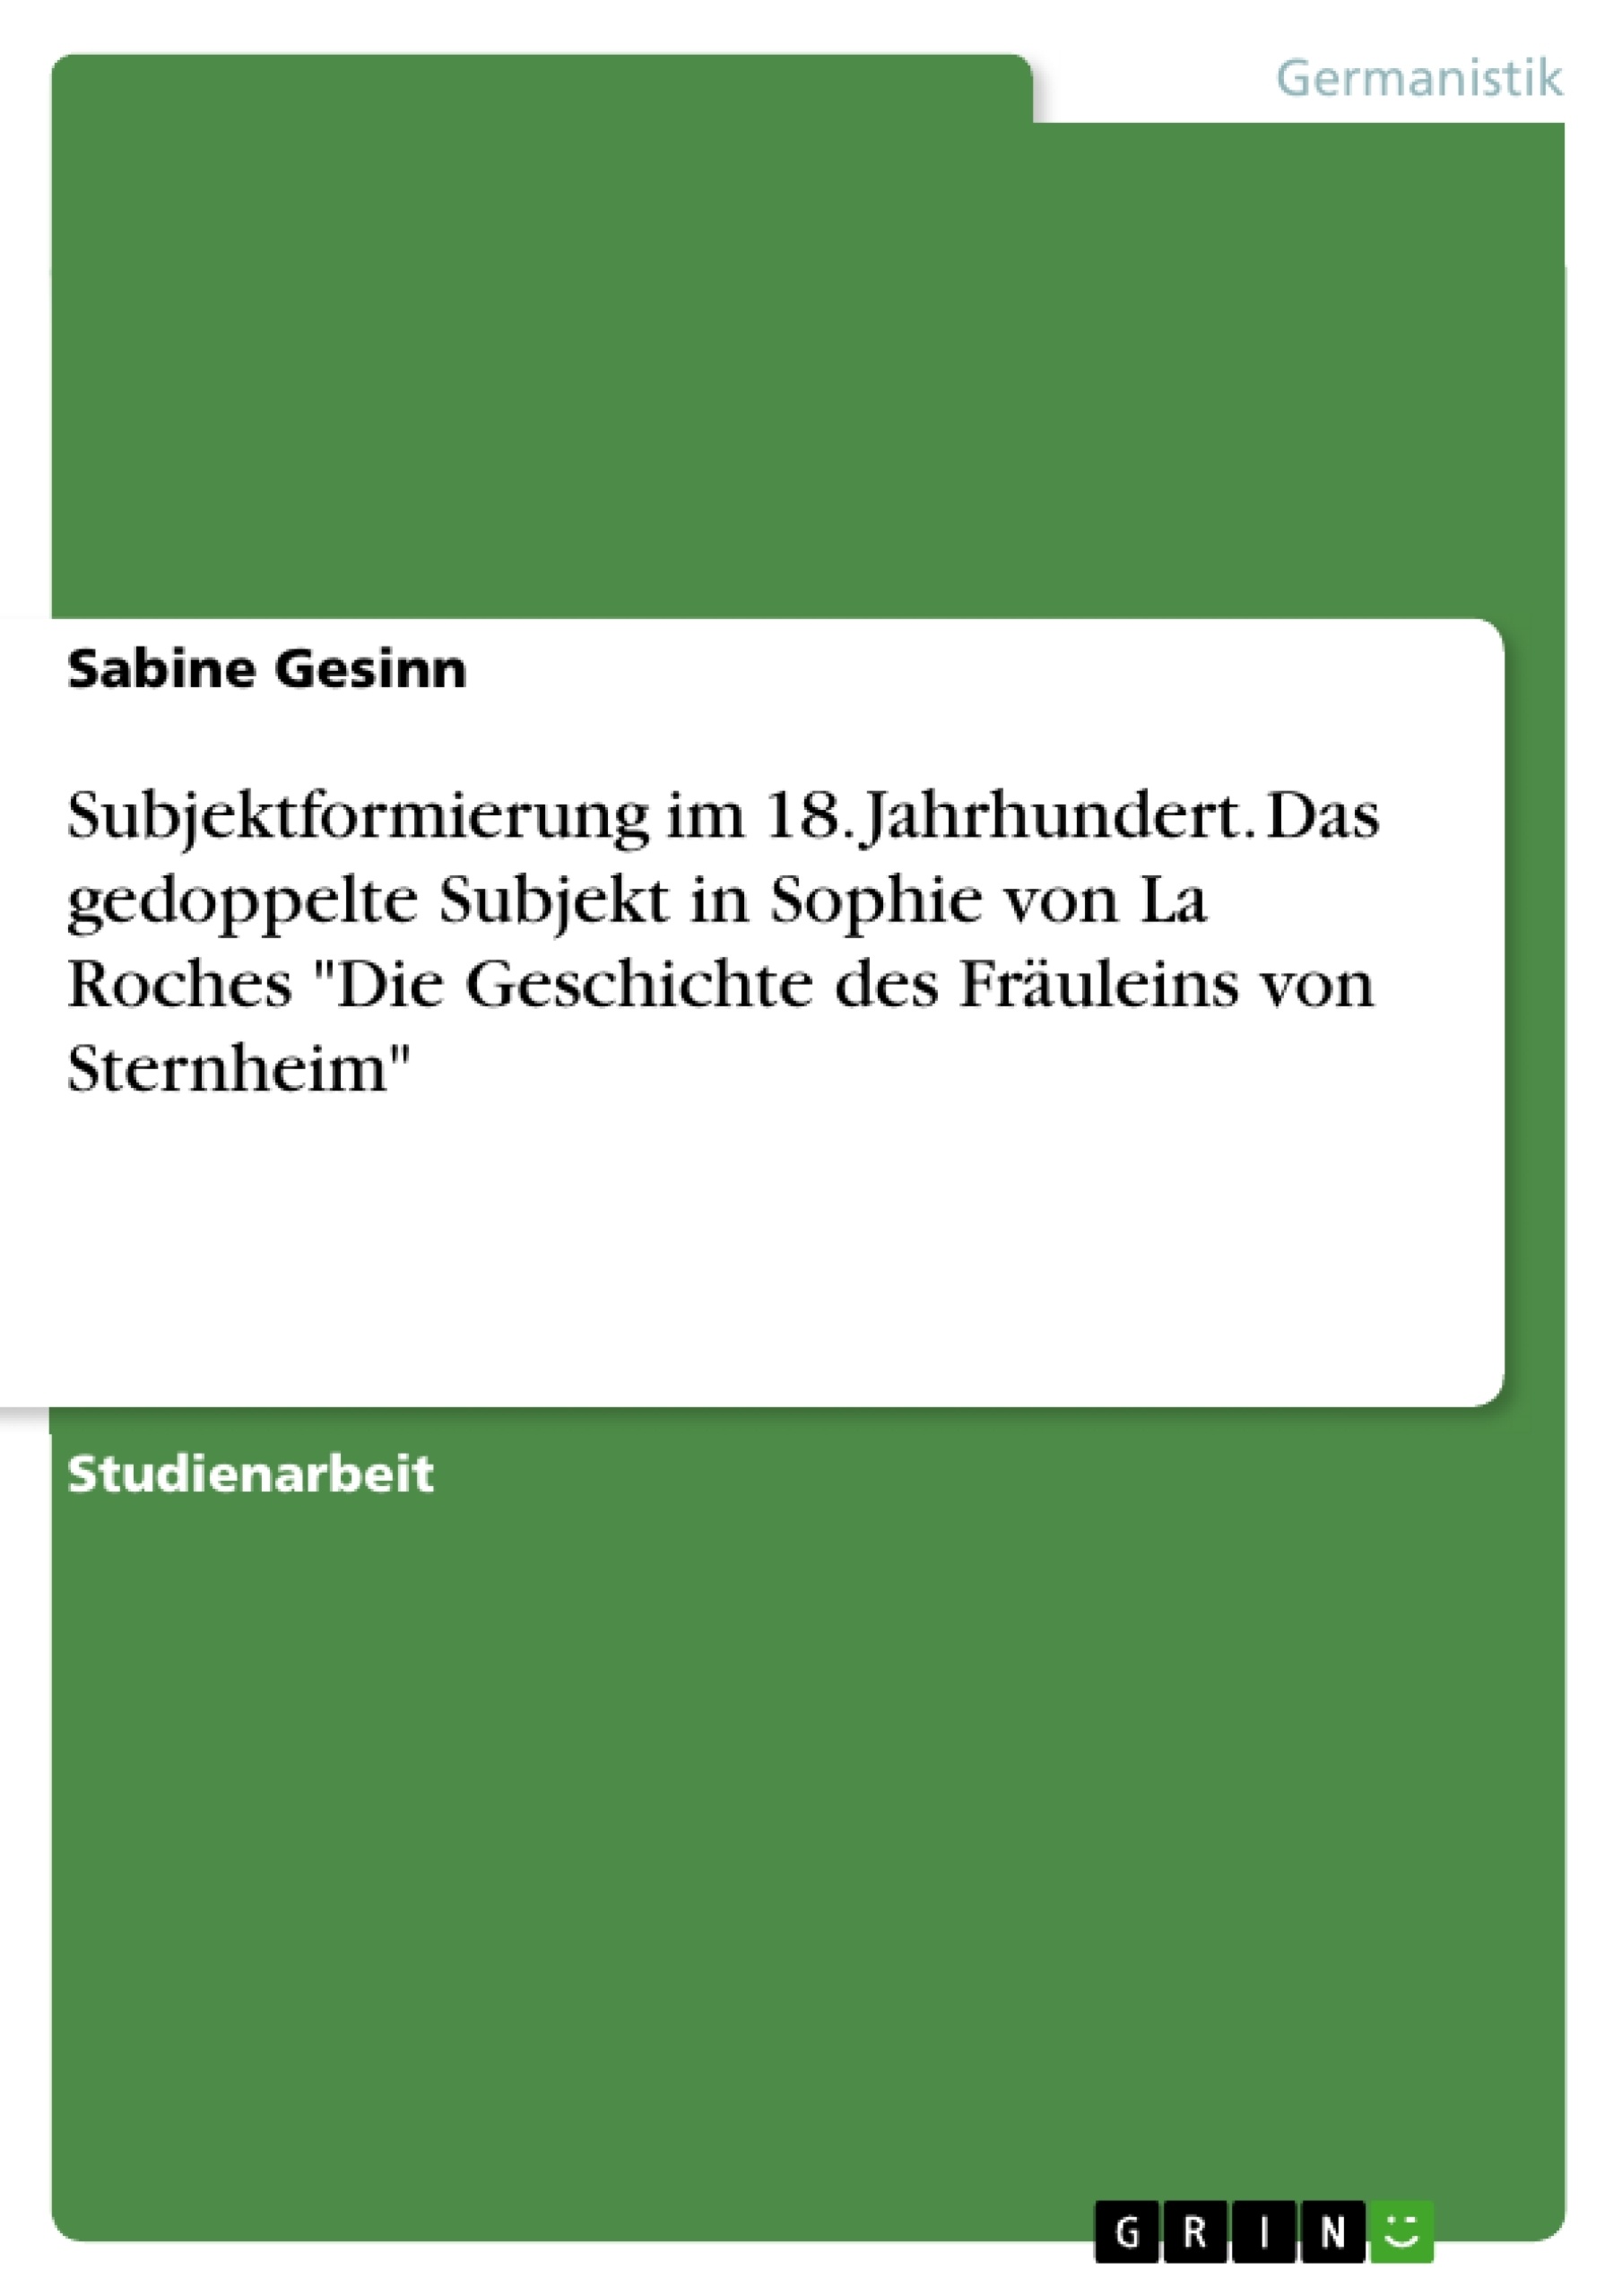 Title: Subjektformierung im 18. Jahrhundert. Das gedoppelte Subjekt in Sophie von La Roches "Die Geschichte des Fräuleins von Sternheim"